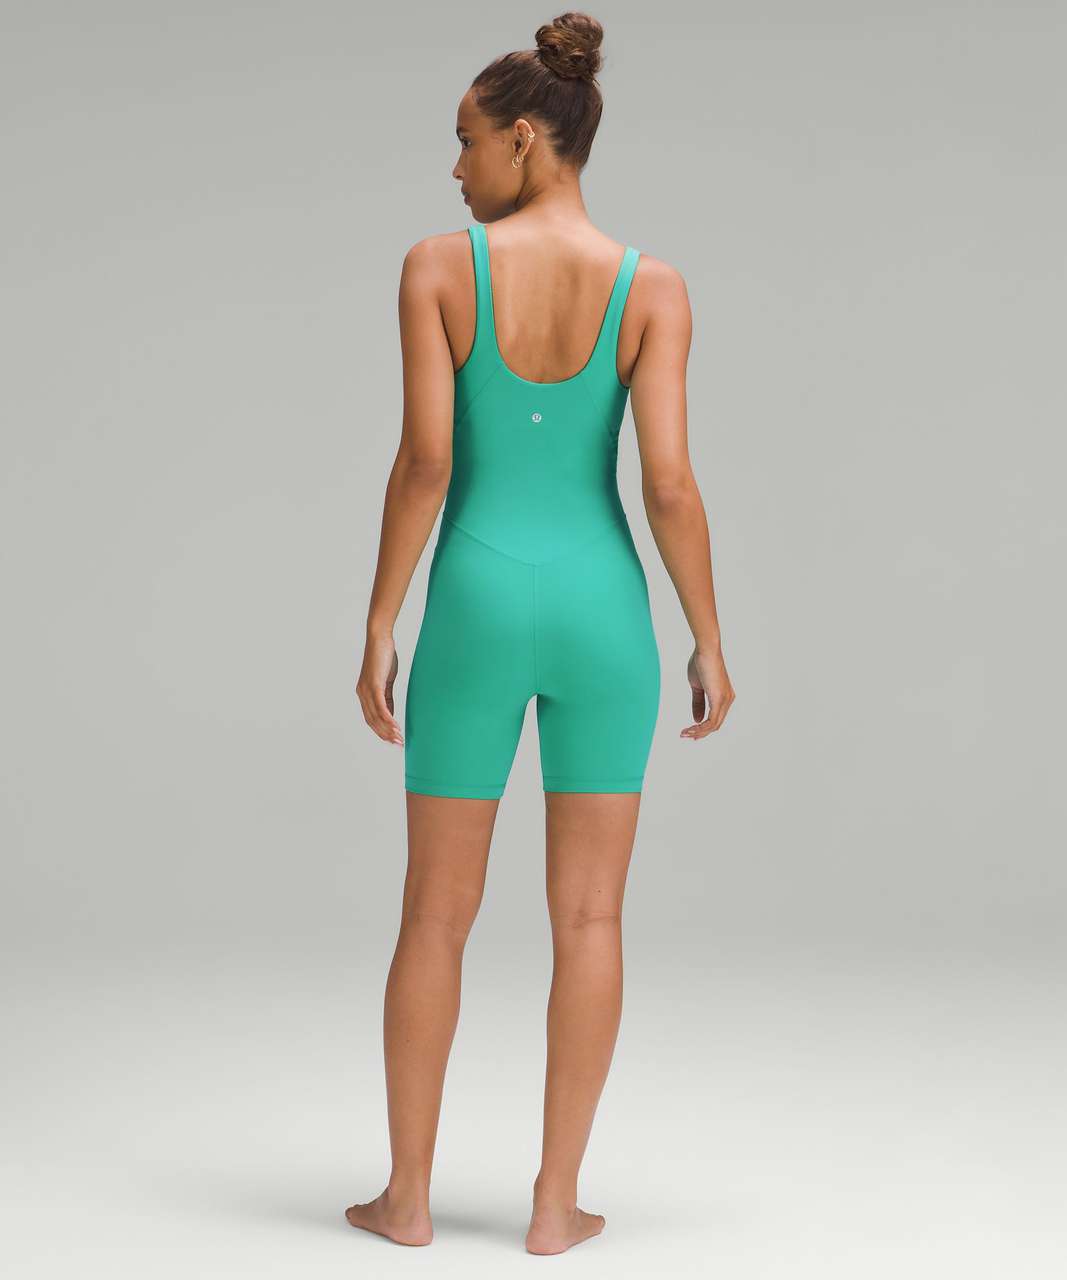 Lululemon Align Bodysuit 6" - Kelly Green